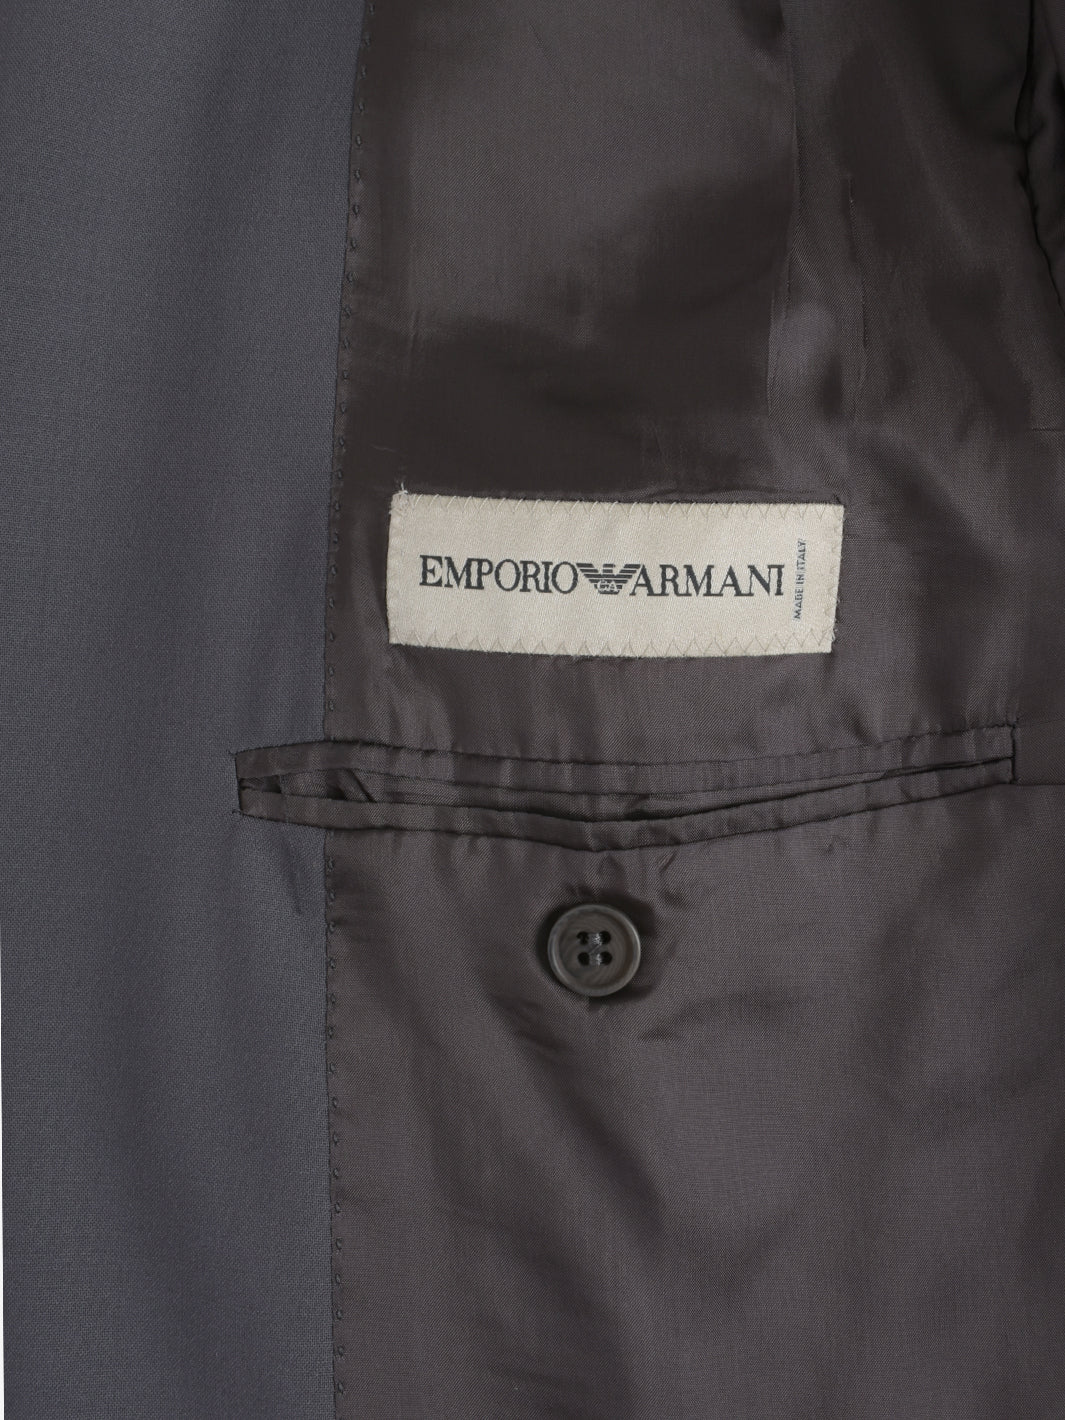 Emporio Armani Gray Jacket - 90s